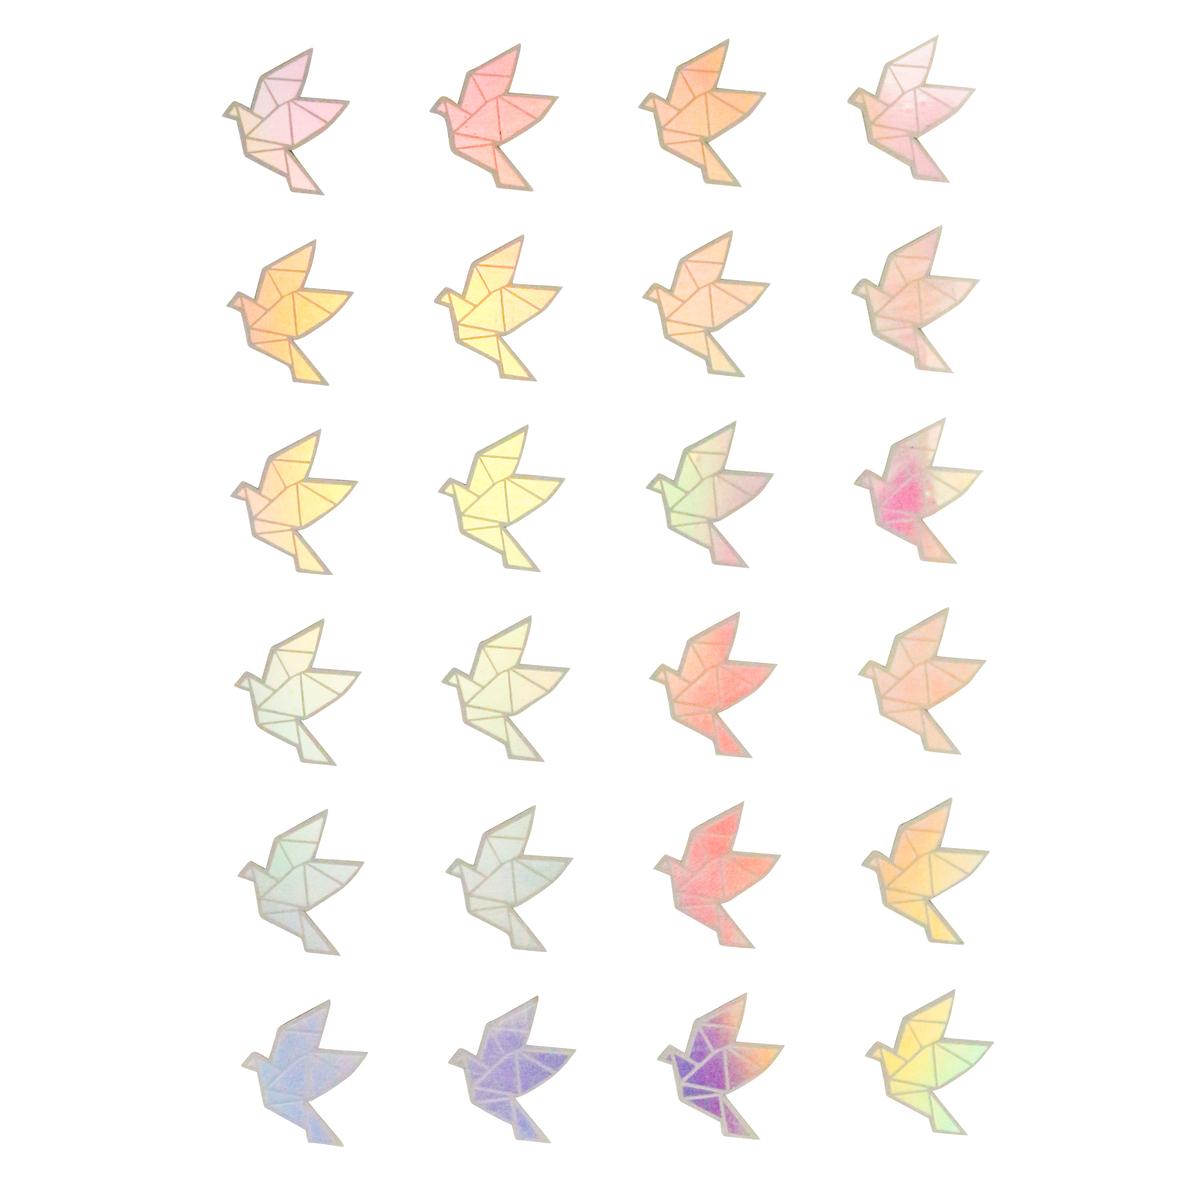 Stickers holographiques, oiseaux origami, 1,9 x 2,1 cm x 48